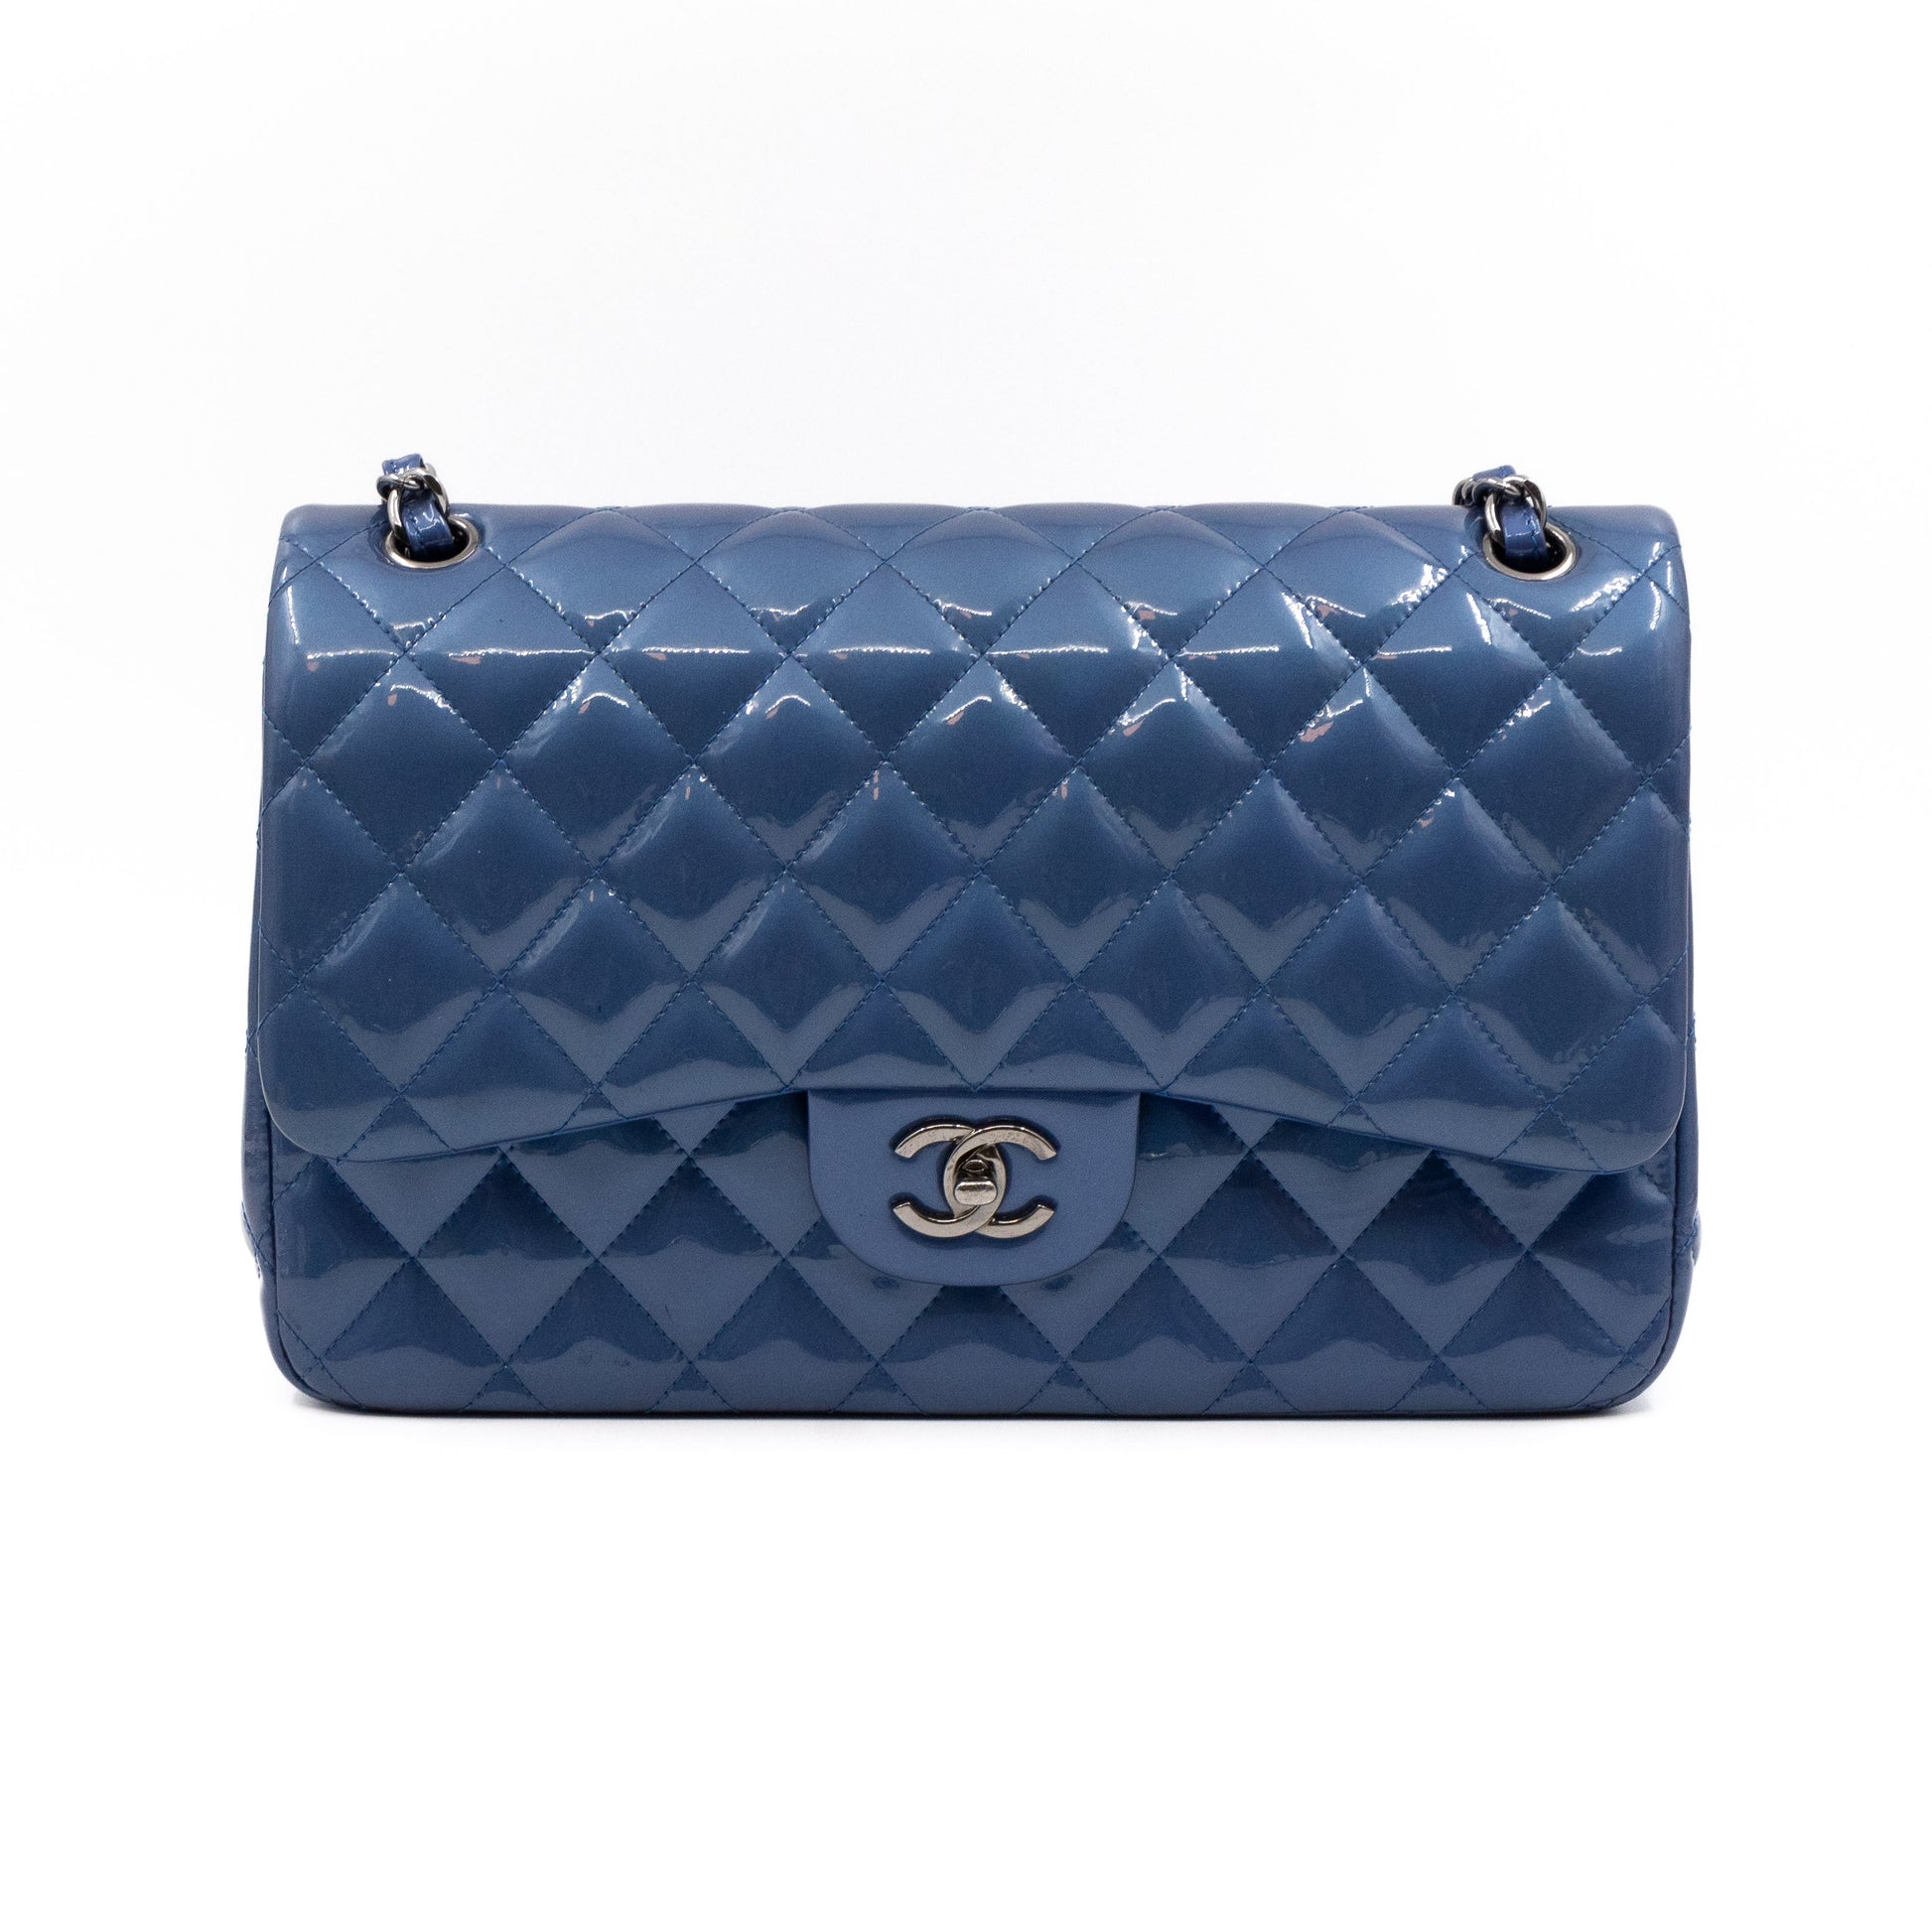 Chanel – Chanel Classic Double Flap Jumbo Royal Blue Metallic